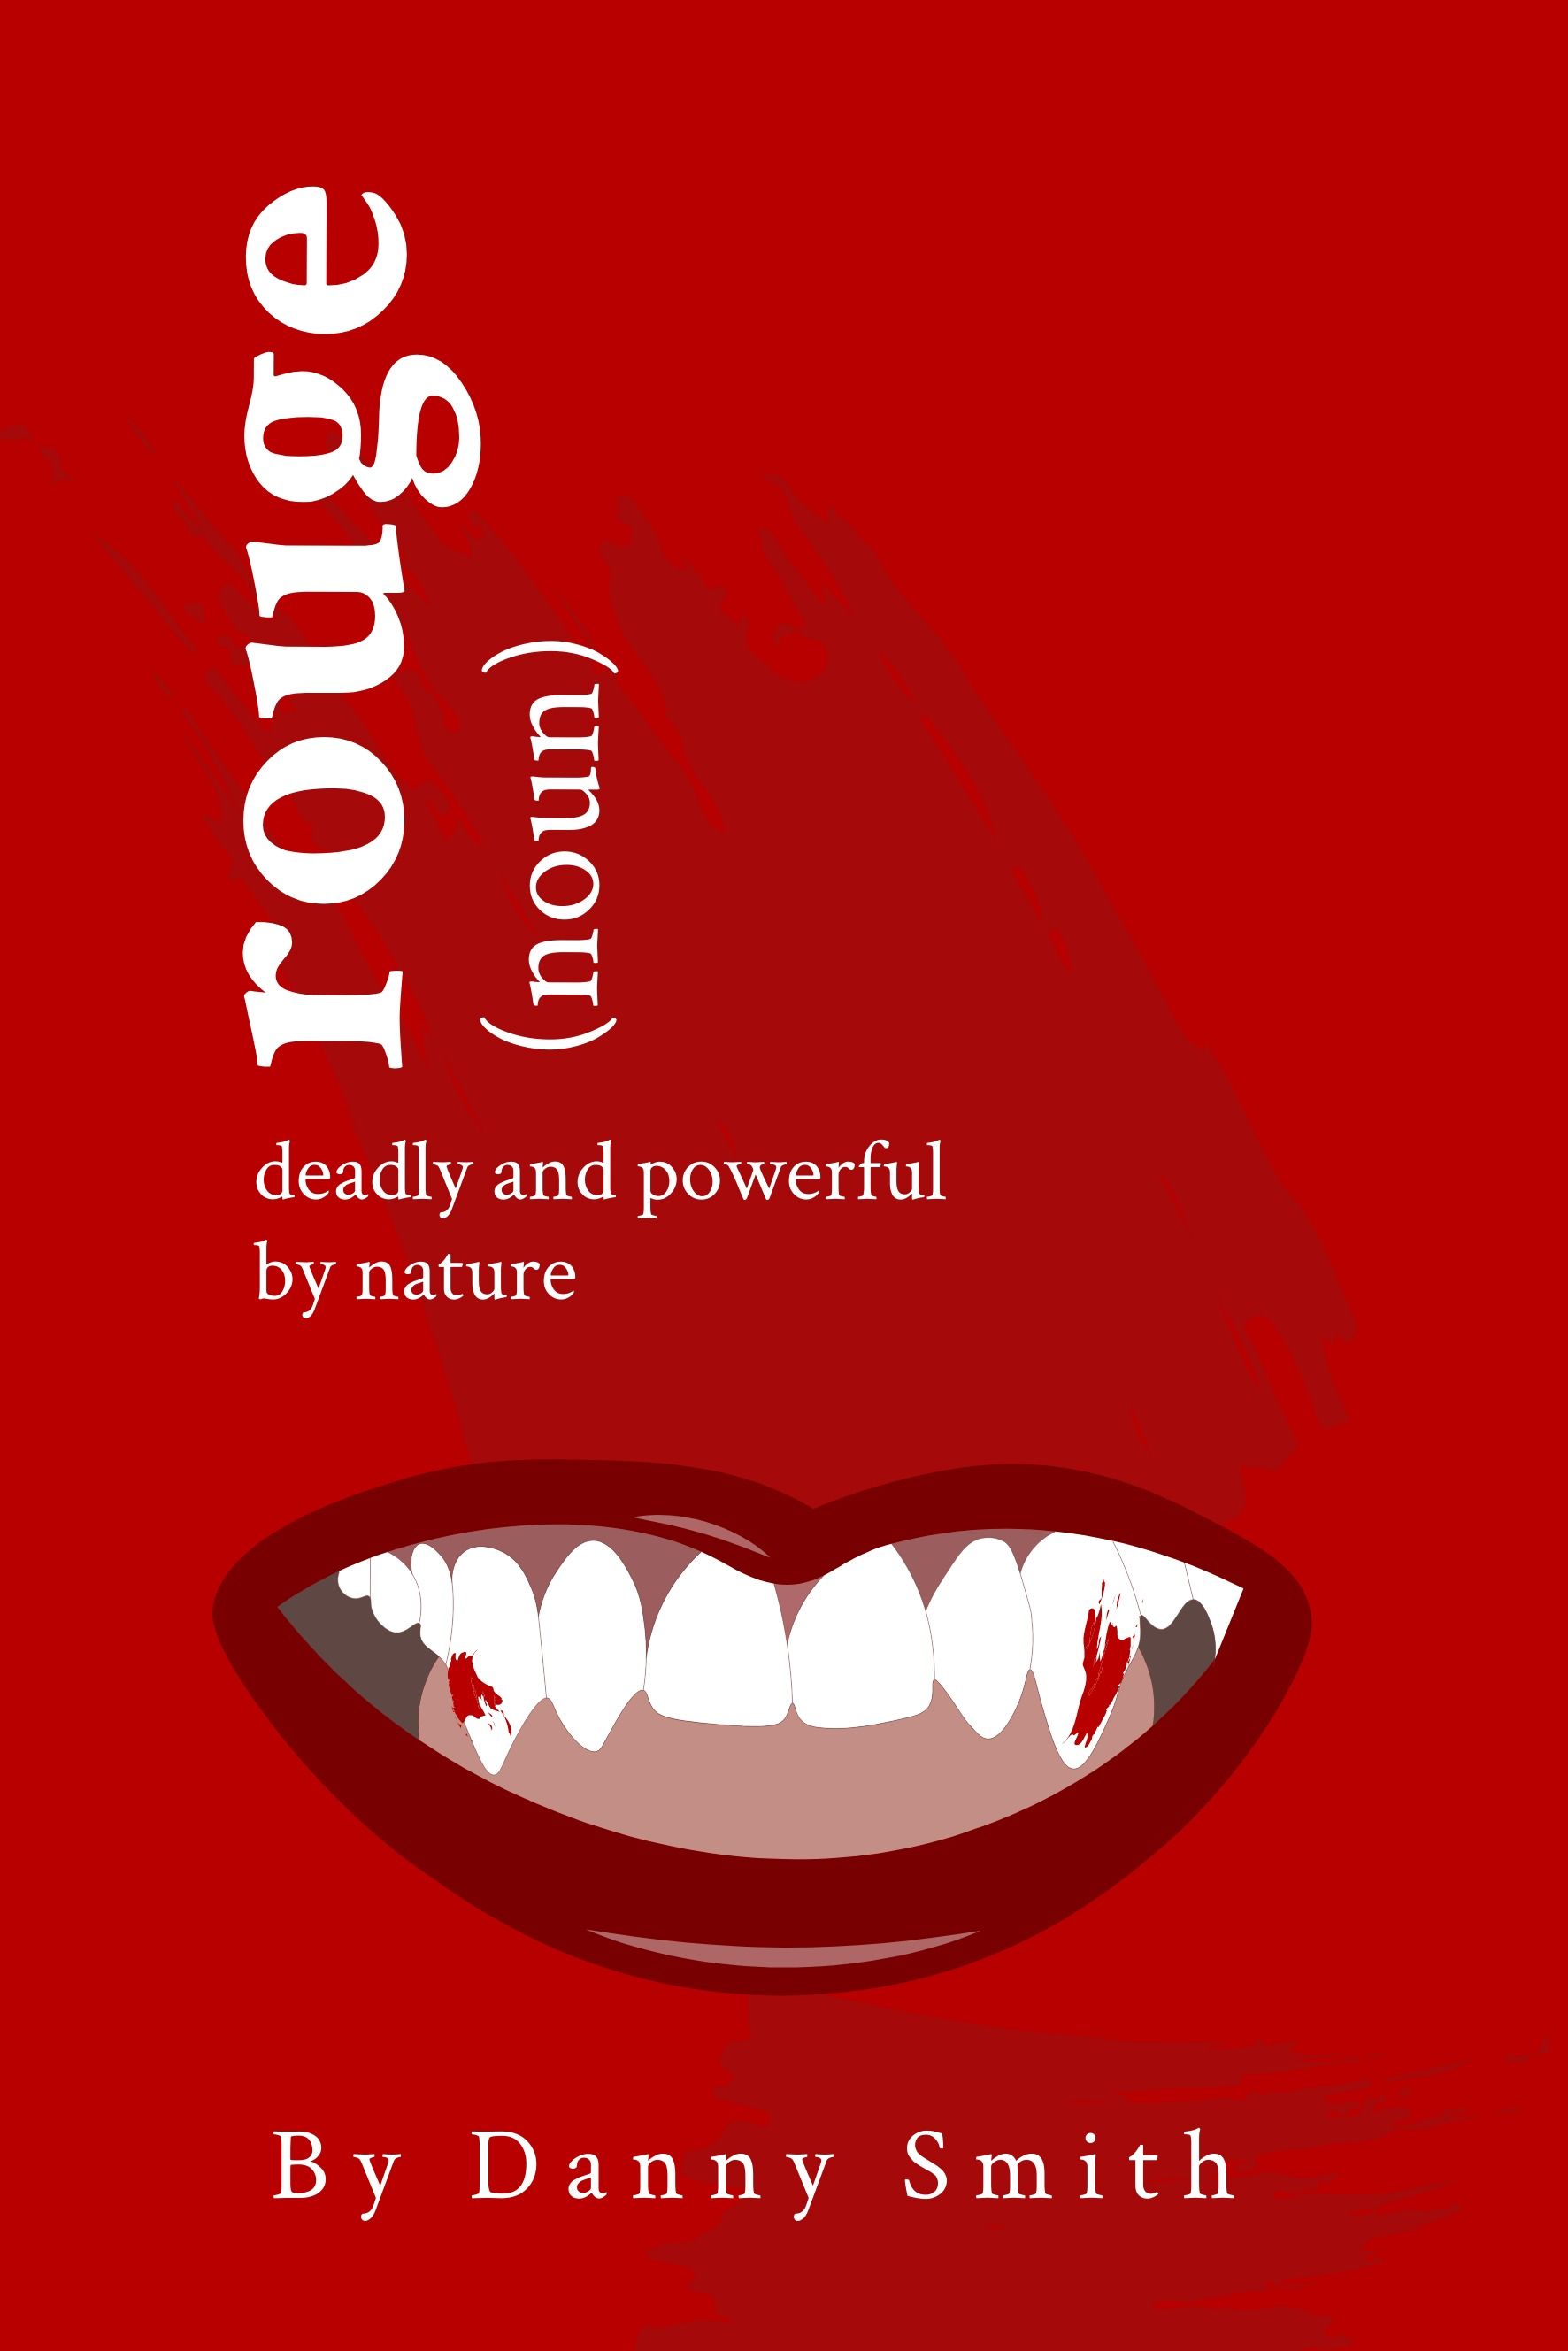 Shades of Red-Buchcover mit „Rouge“ vom Platzhalter-Autorennamen „Danny Smith“ mit Serifenschrift und Lippensymbol